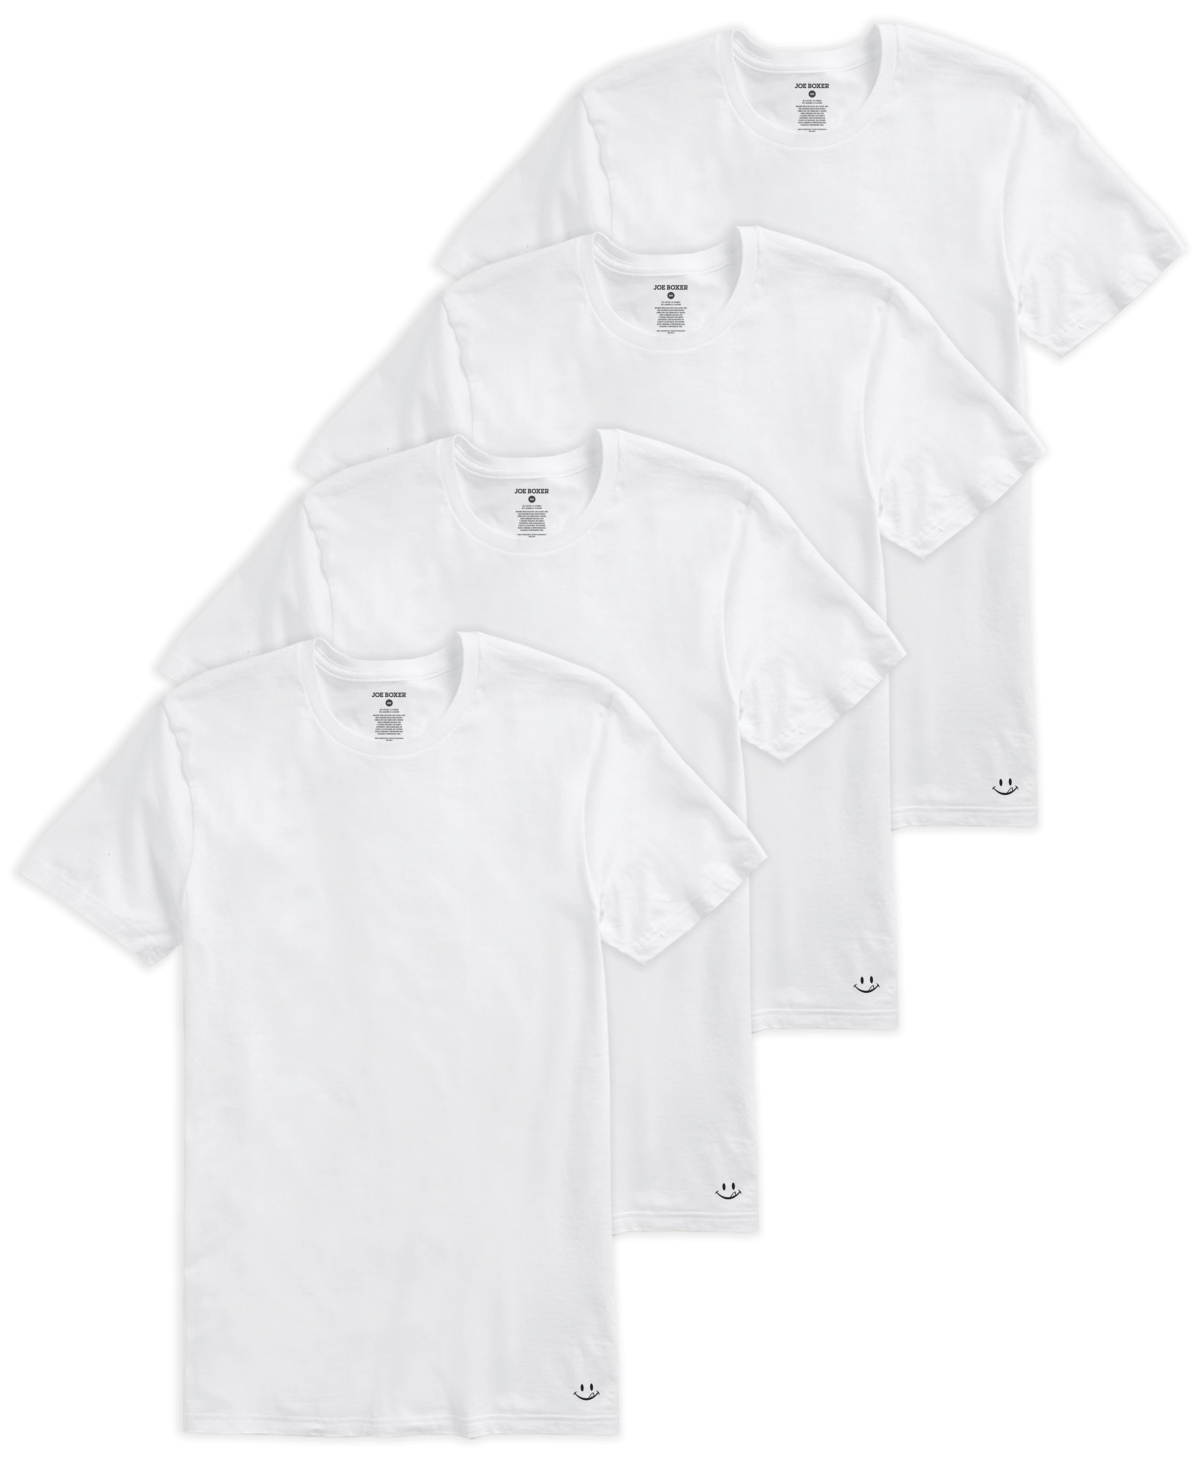 Men's Crew Neck T-shirt, Pack of 4 - White